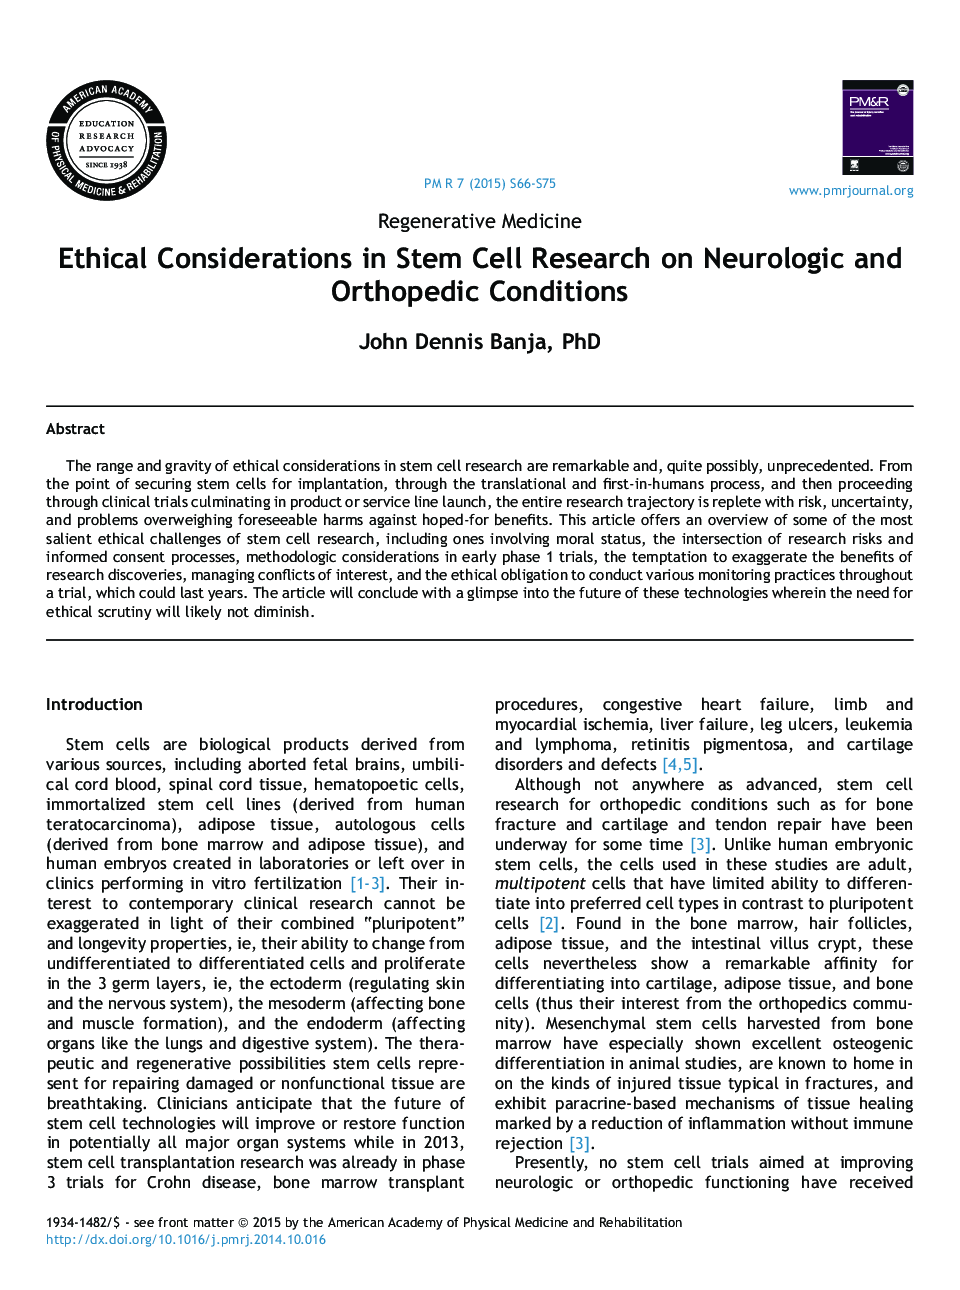 بررسیهای پزشکی بازآموزی در بررسی سلول های بنیادی در شرایط نورولوژیک و ارتوپدی 